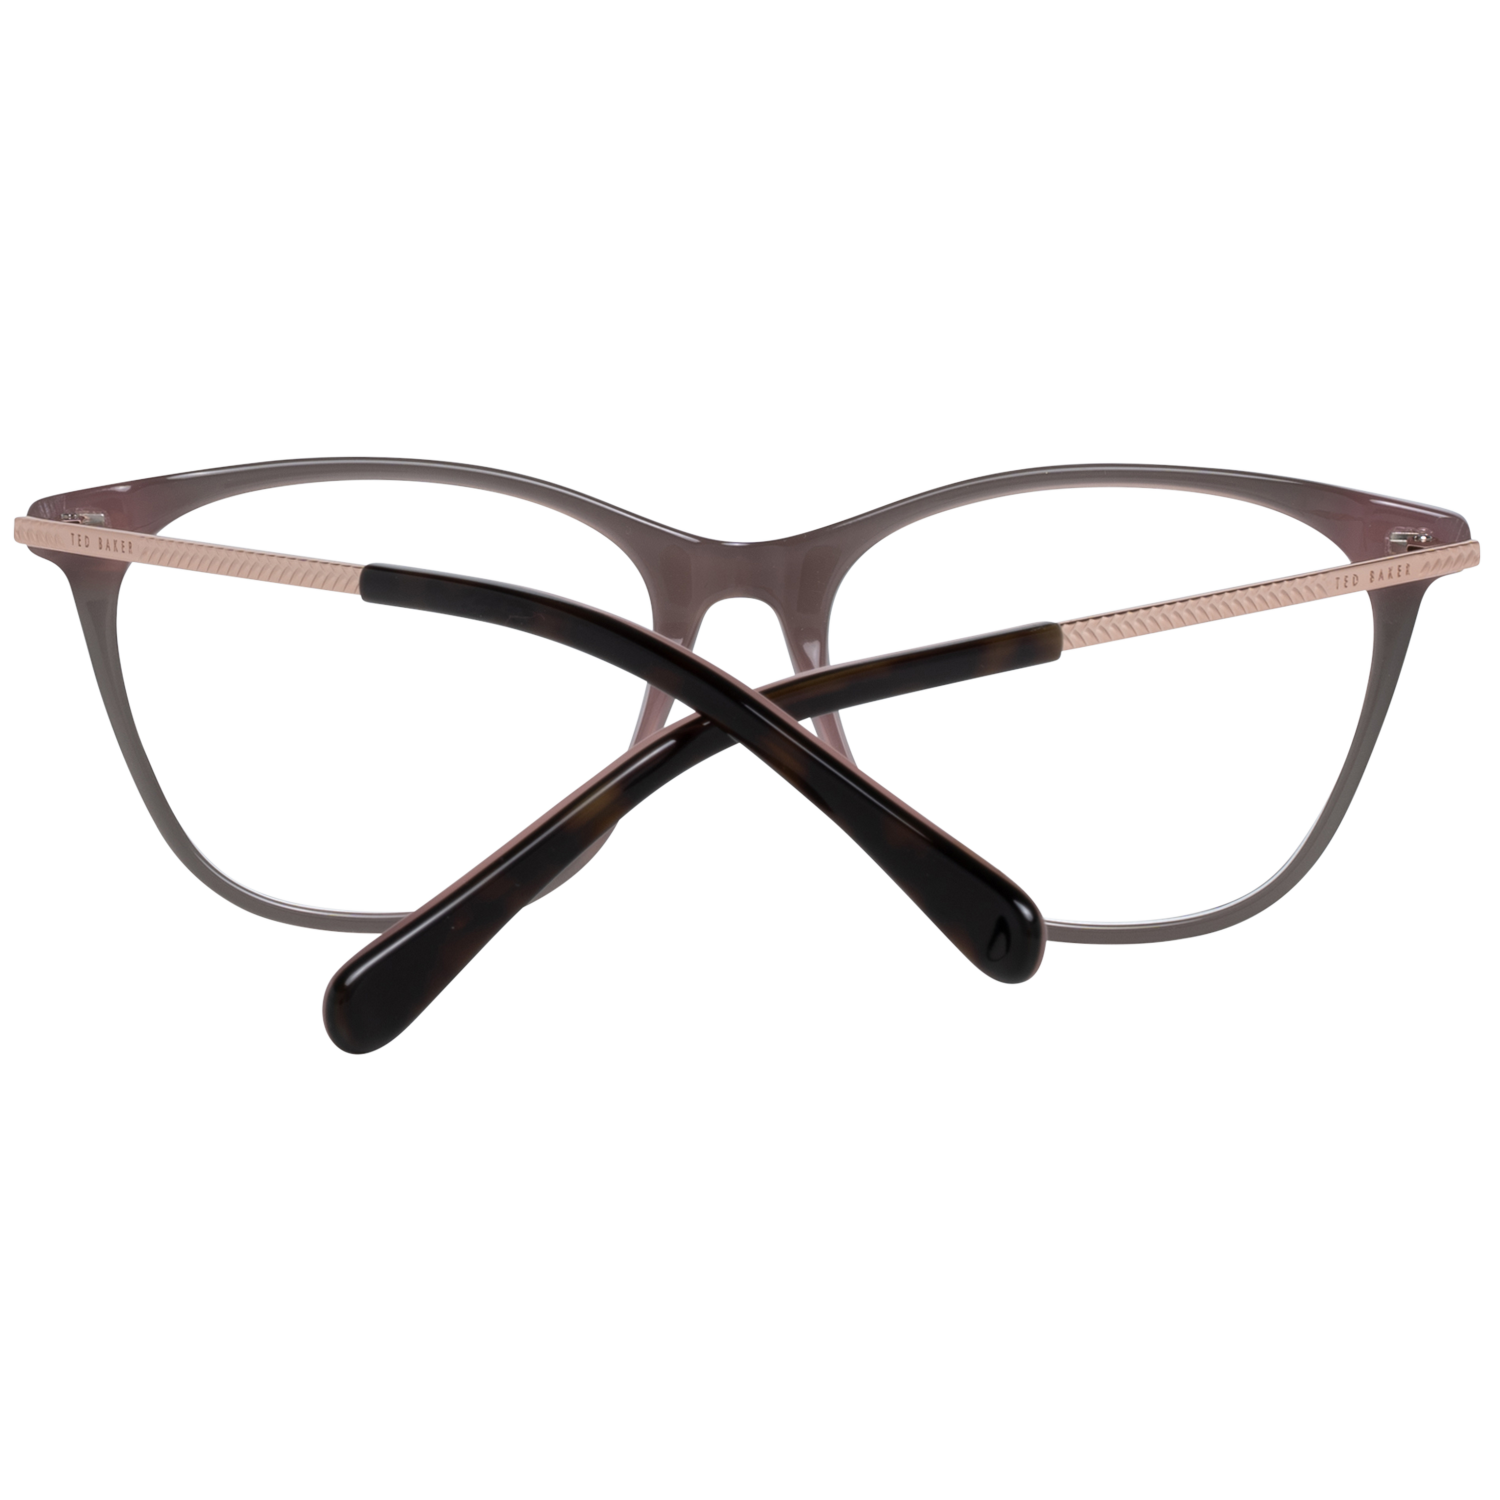 Ted Baker Frames Ted Baker Optical Frame Prescription Glasses TB9184 219 53 Rayna Eyeglasses Eyewear UK USA Australia 